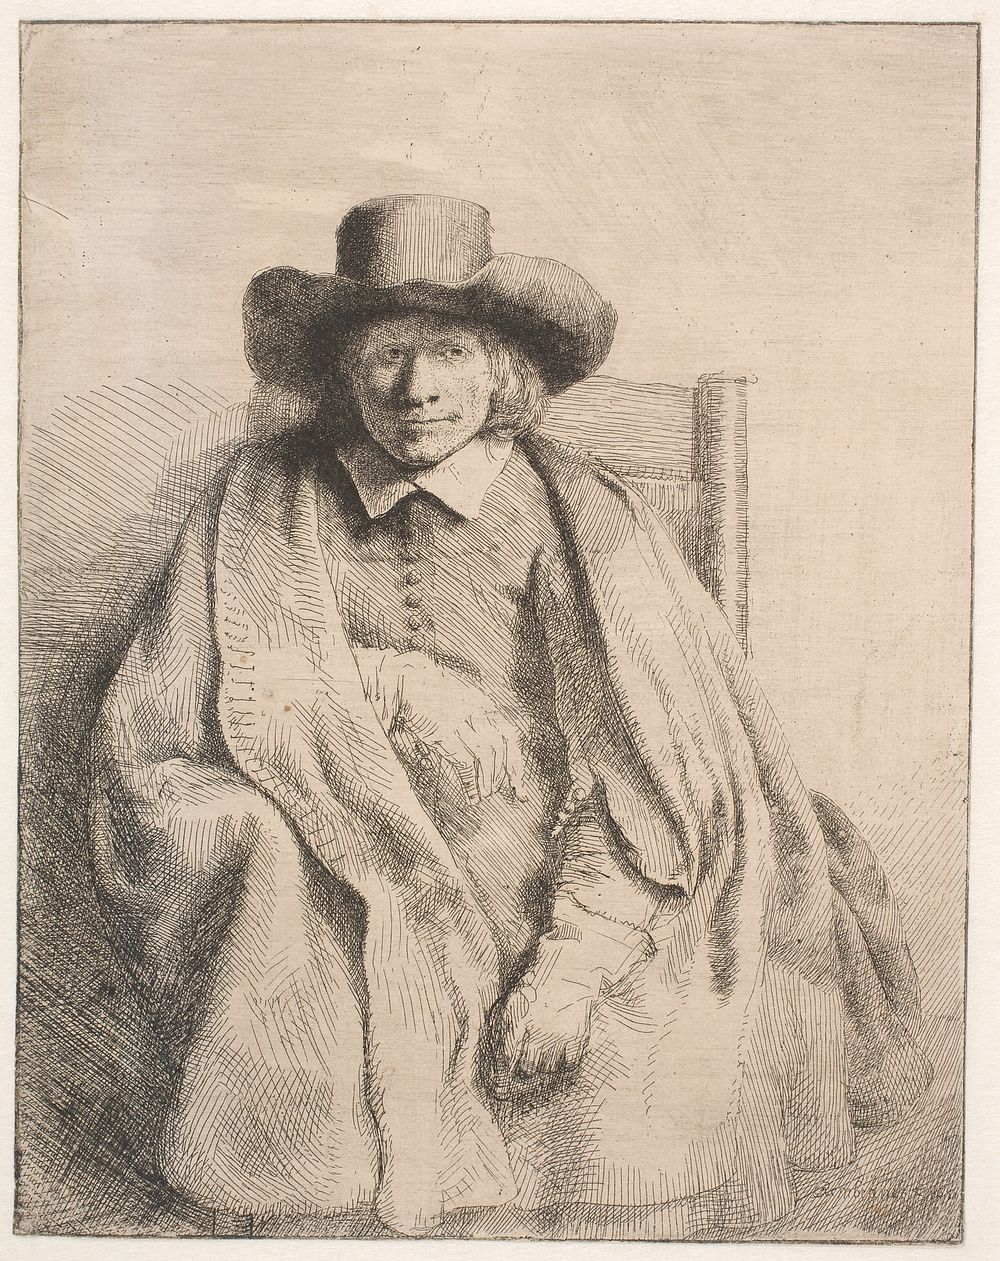 The art dealer and publisher Clement de Jonghe by Rembrandt van Rijn